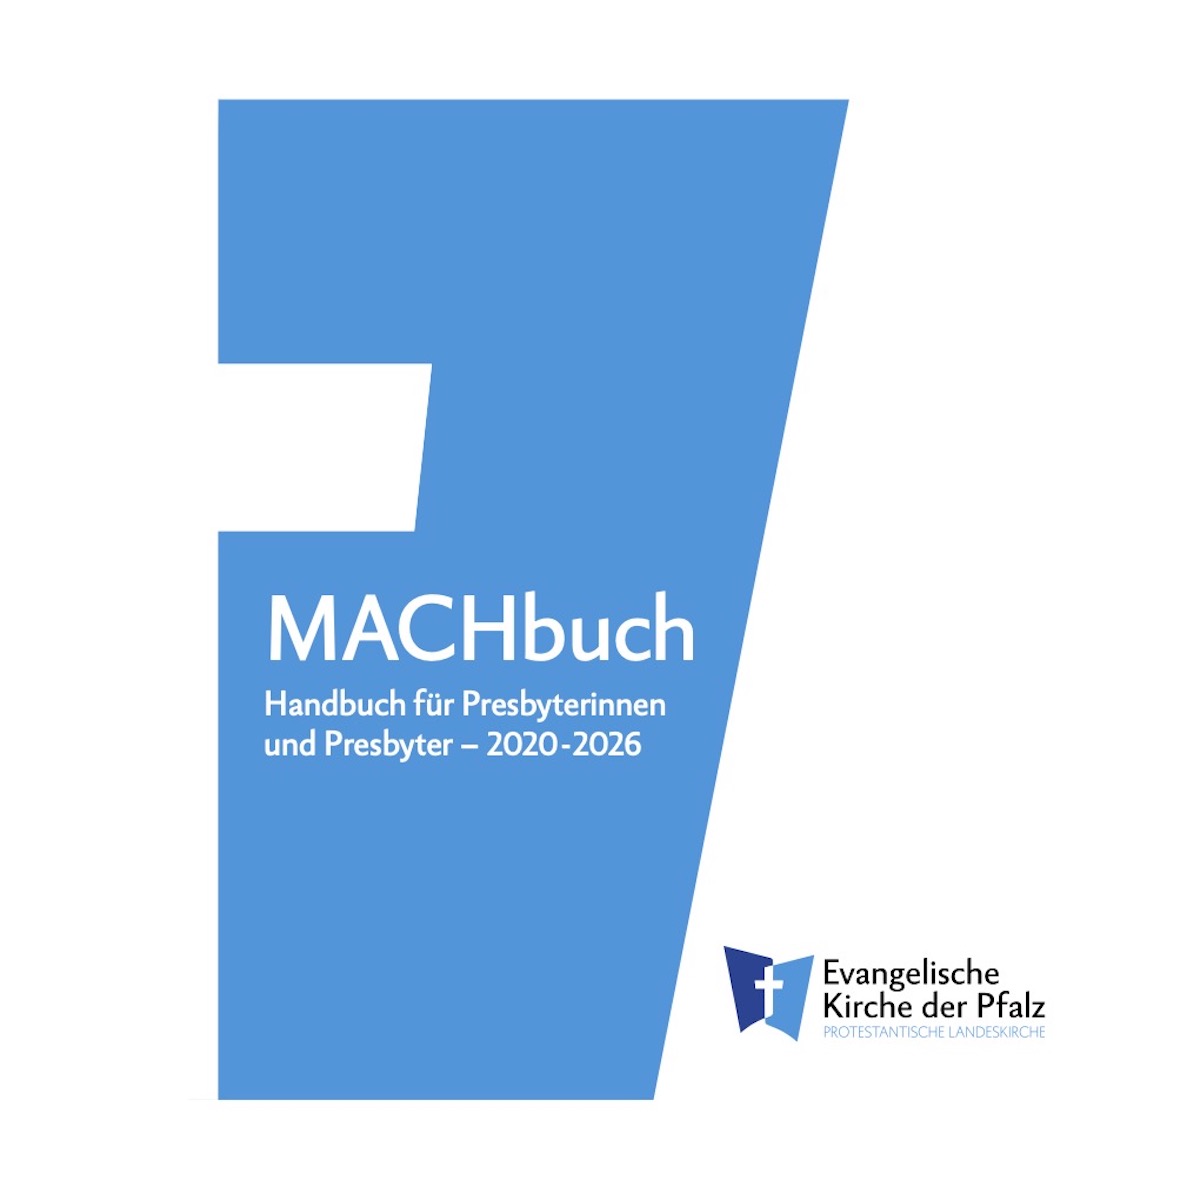 MACHbuch – Titelseite